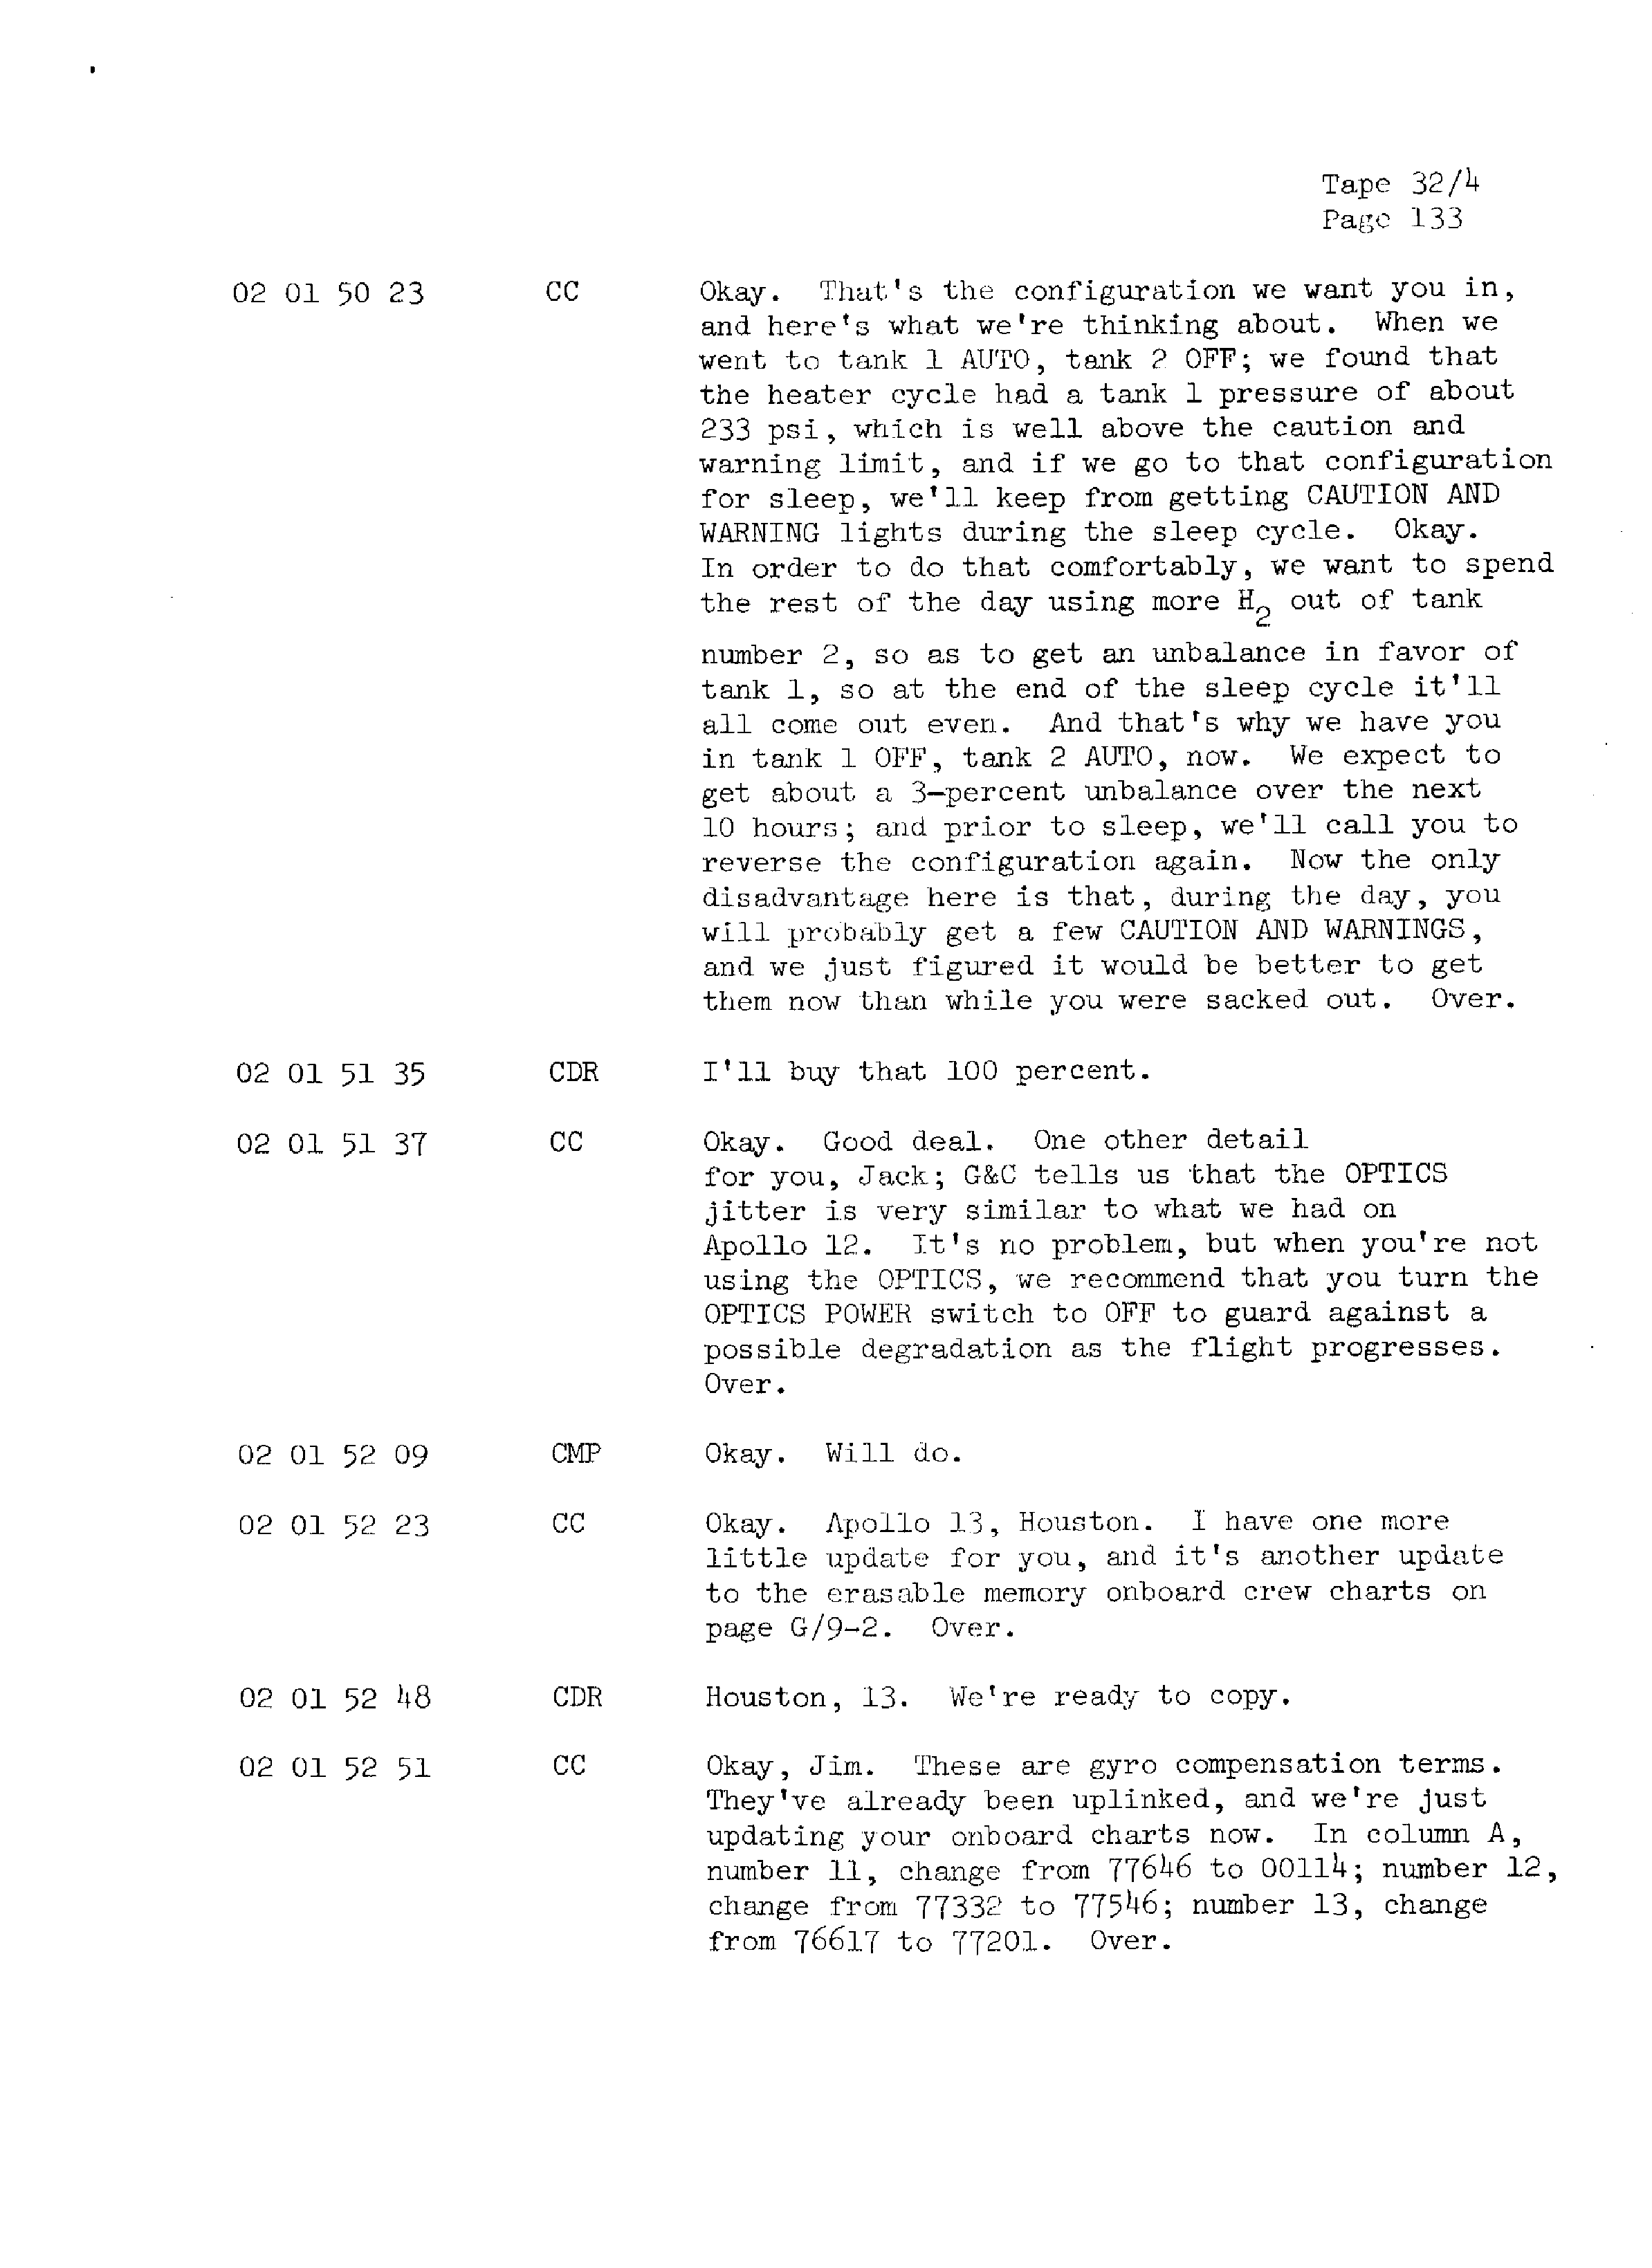 Page 140 of Apollo 13’s original transcript